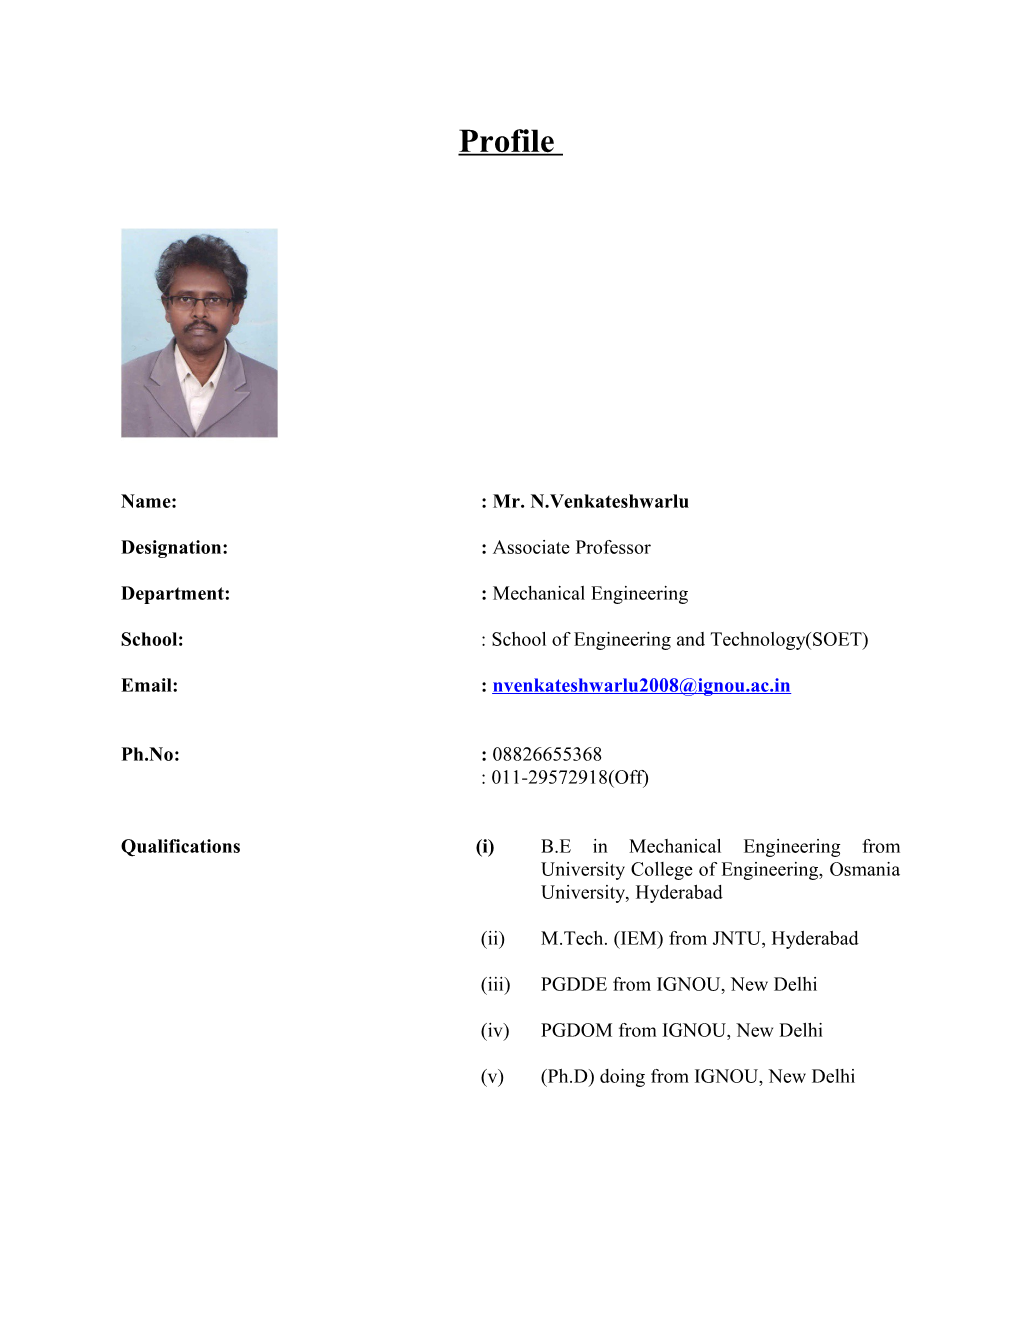 Name Mr. N.Venkateshwarlu